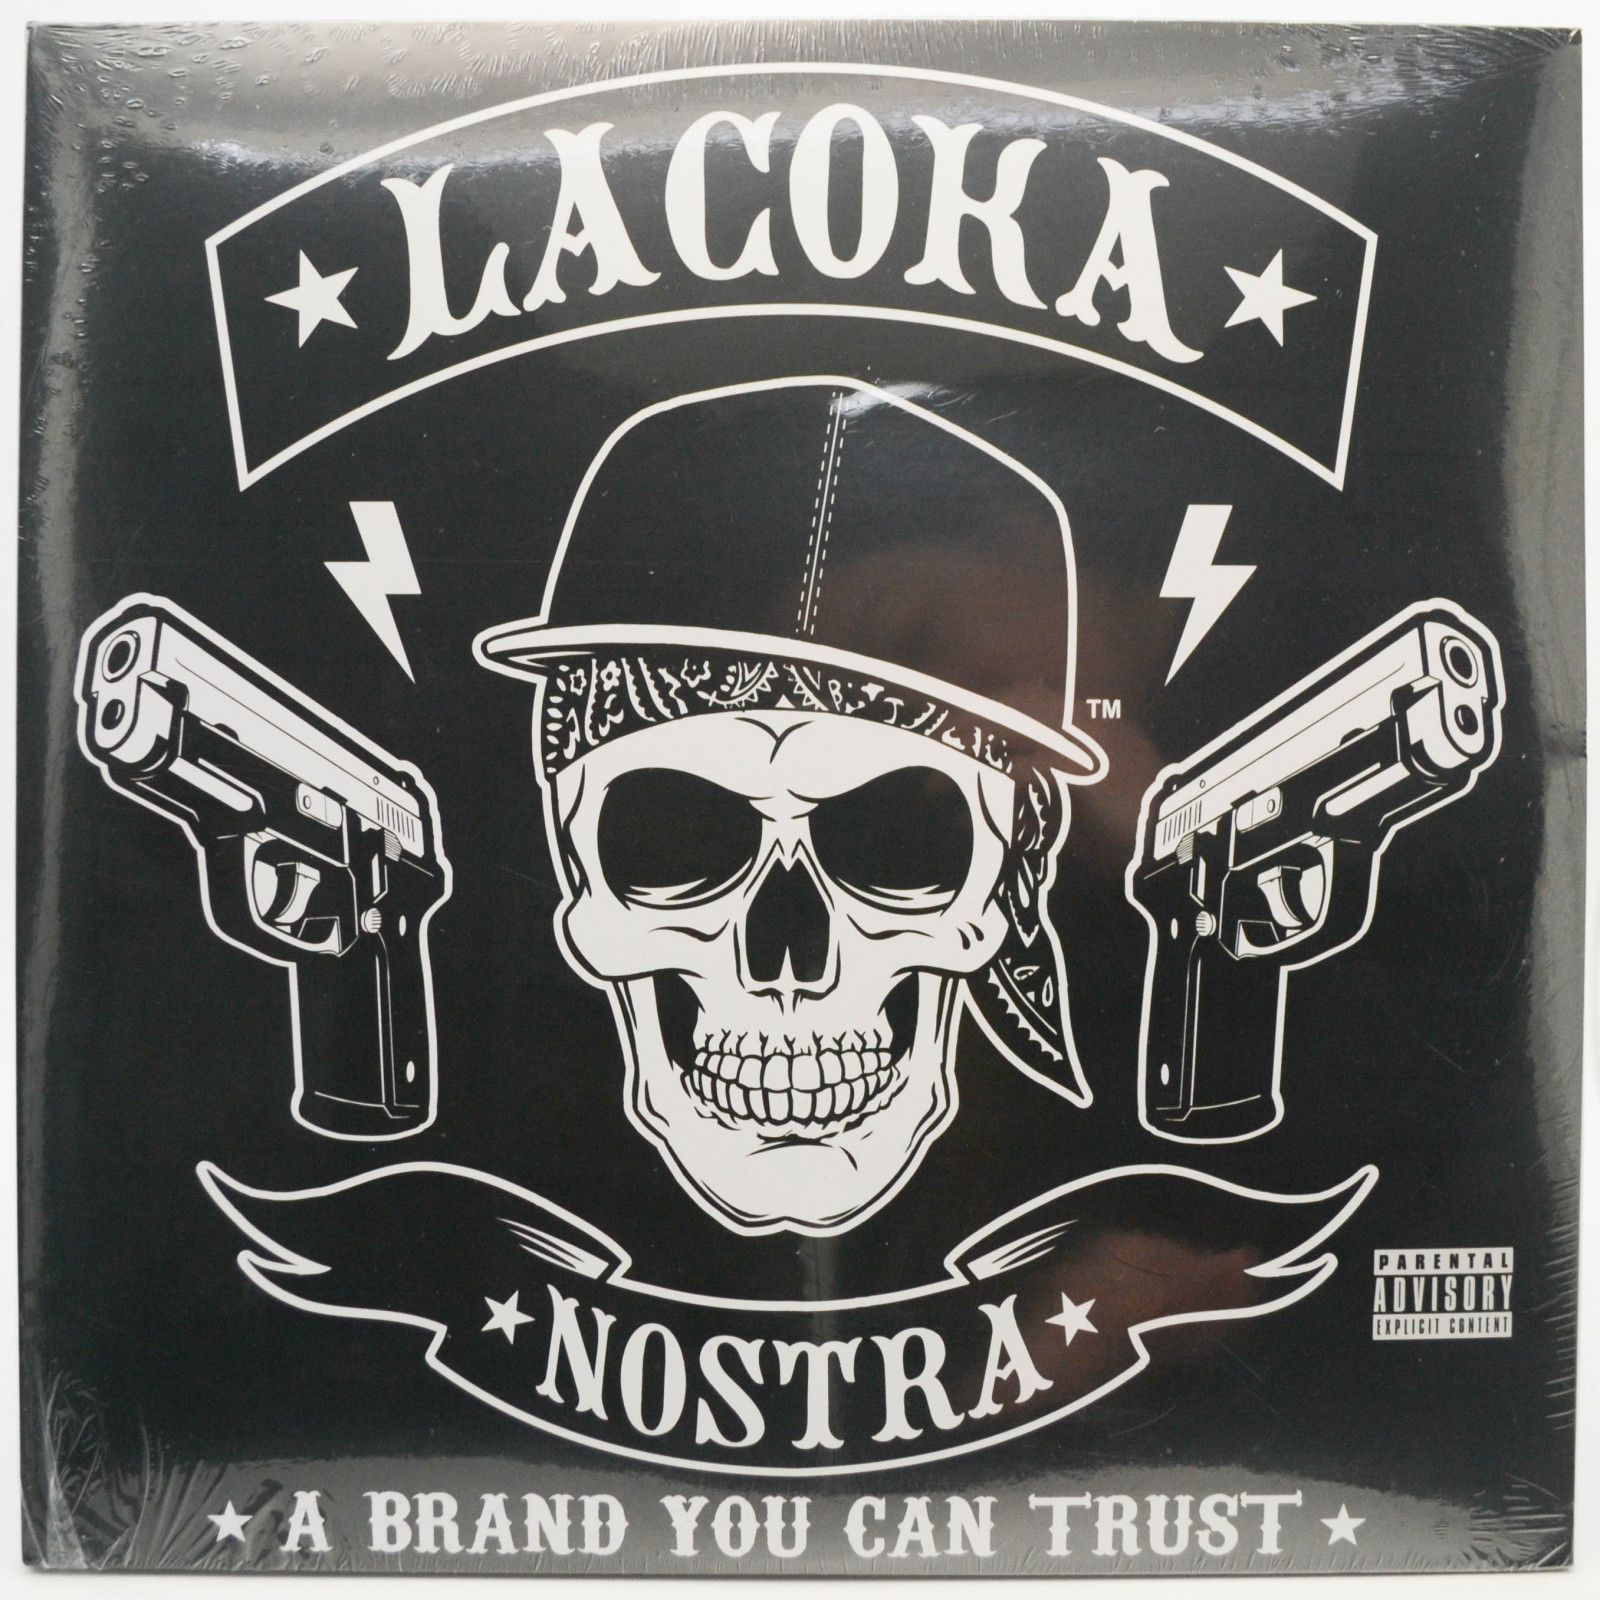 La Coka Nostra — A Brand You Can Trust (2LP), 2009